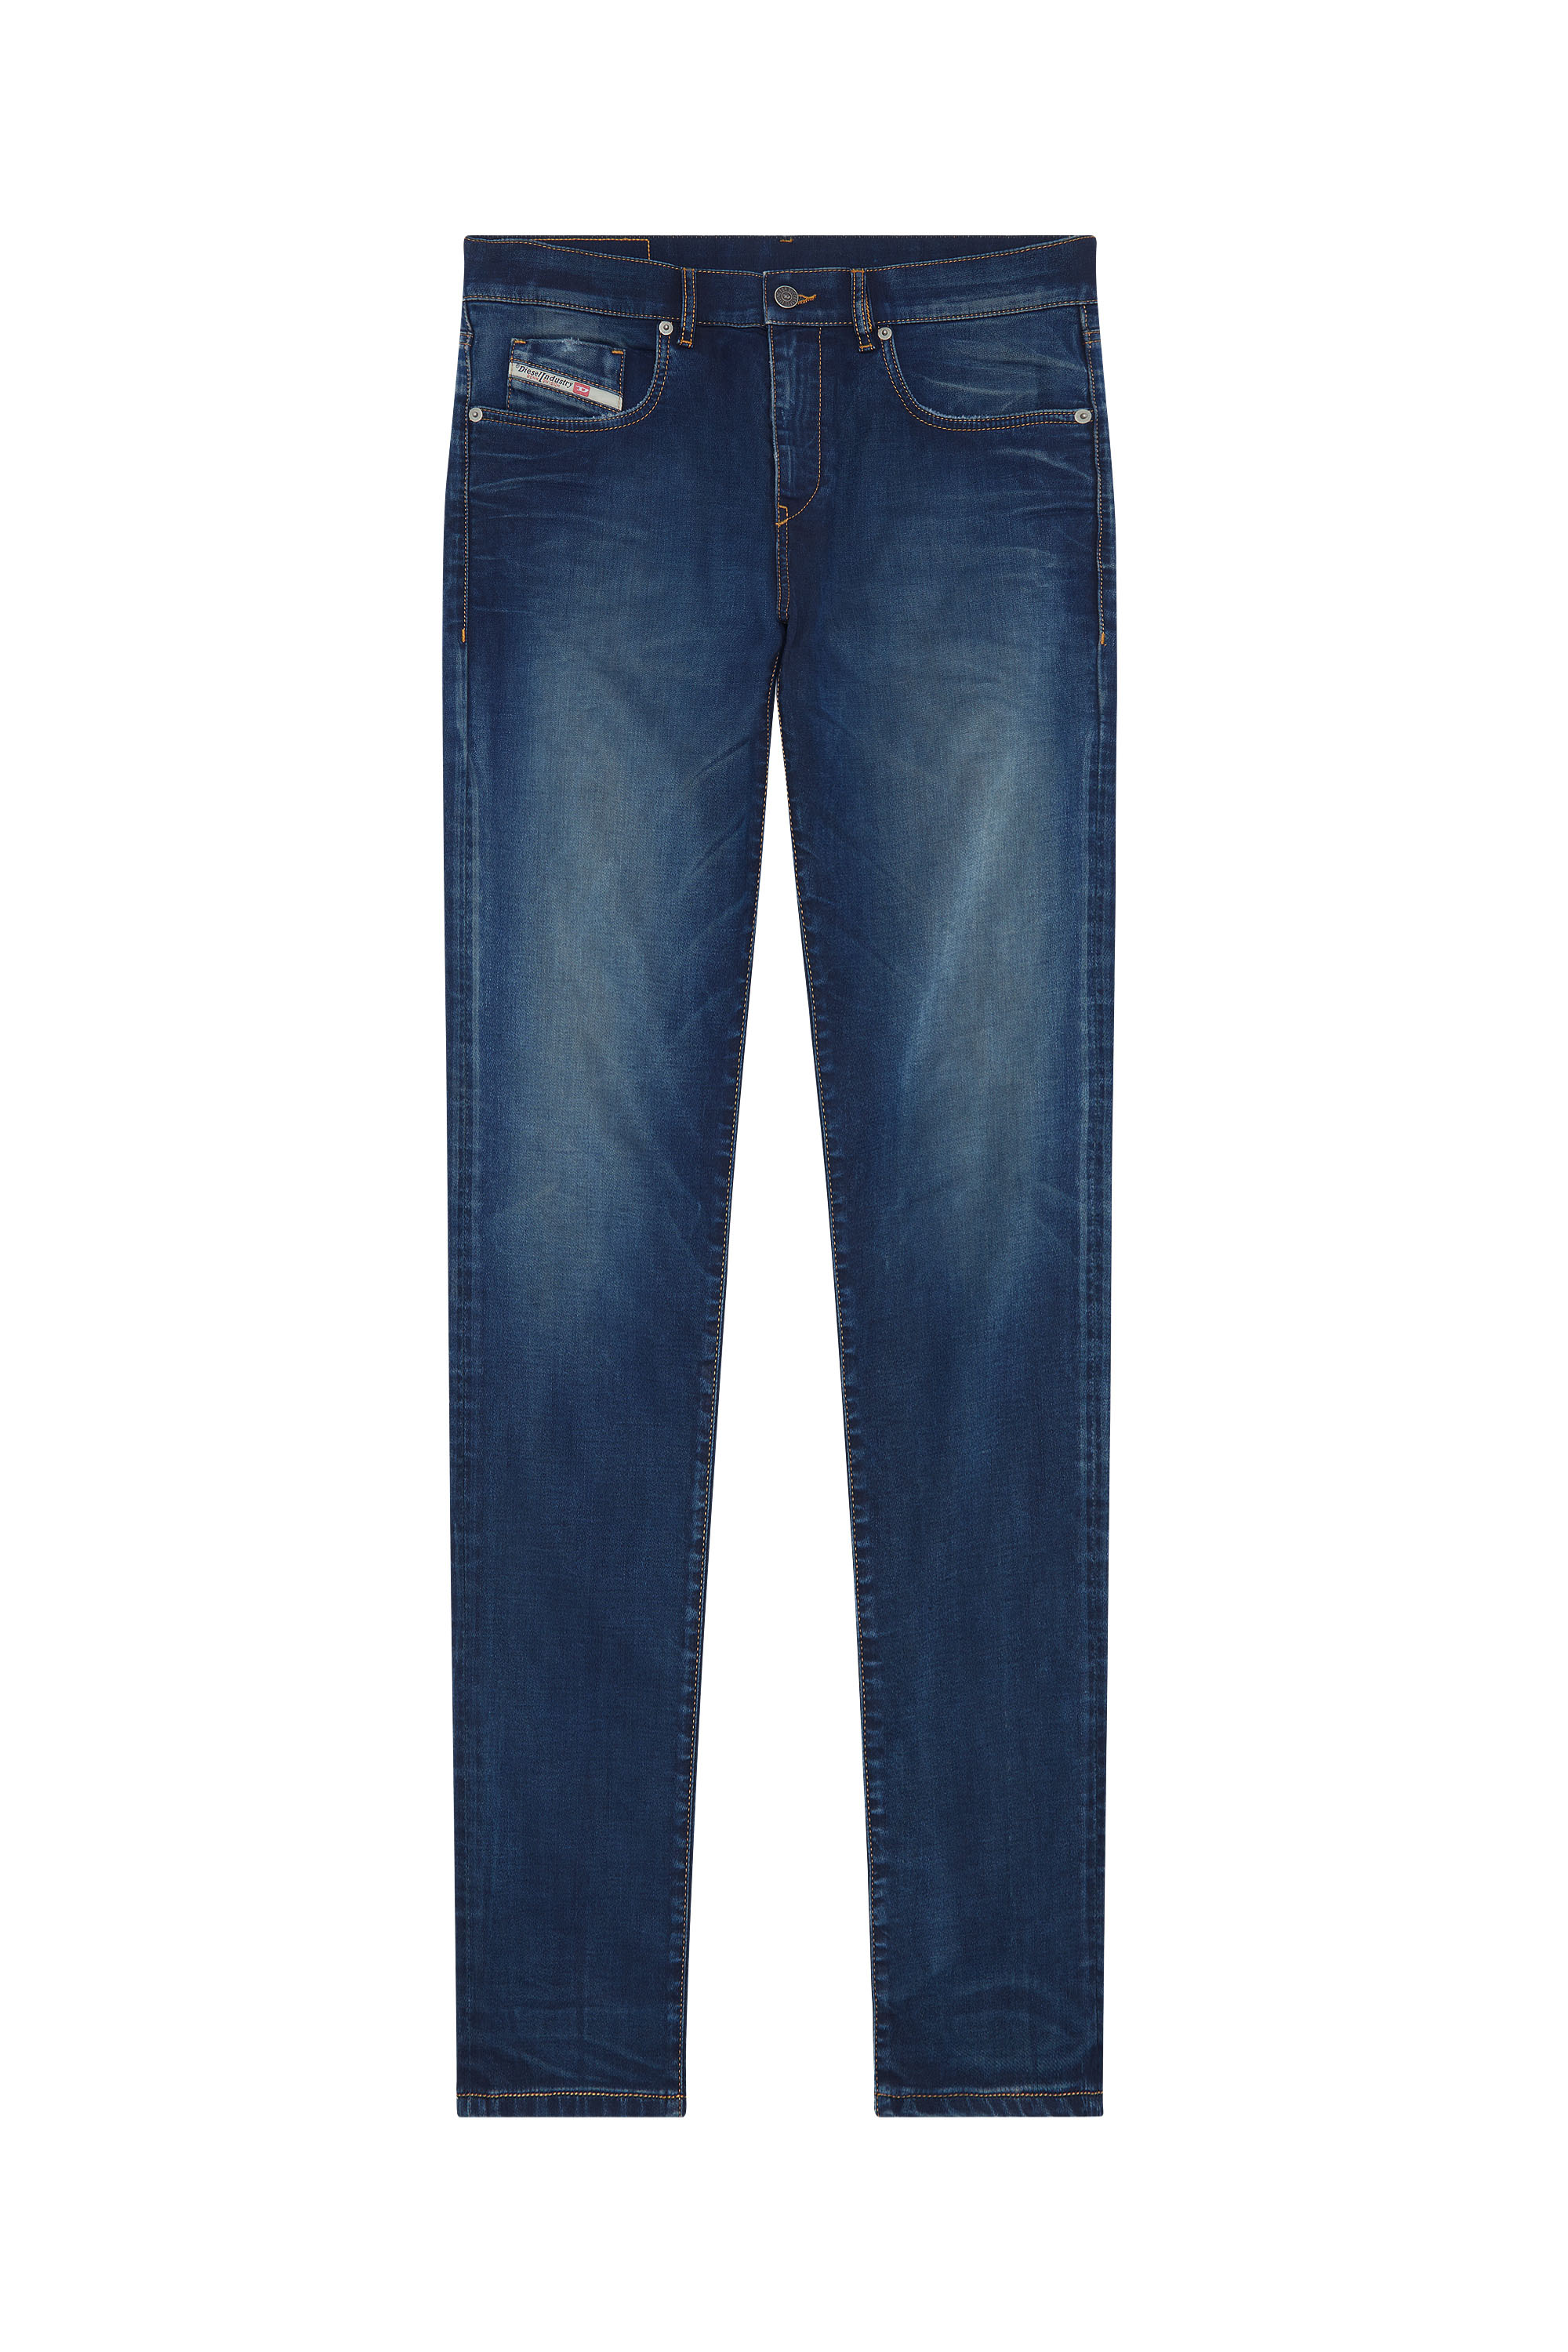 Homme Vêtements Jeans Jeans slim Slim Fit Jeans 2019 D-strukt Jean DIESEL pour homme 